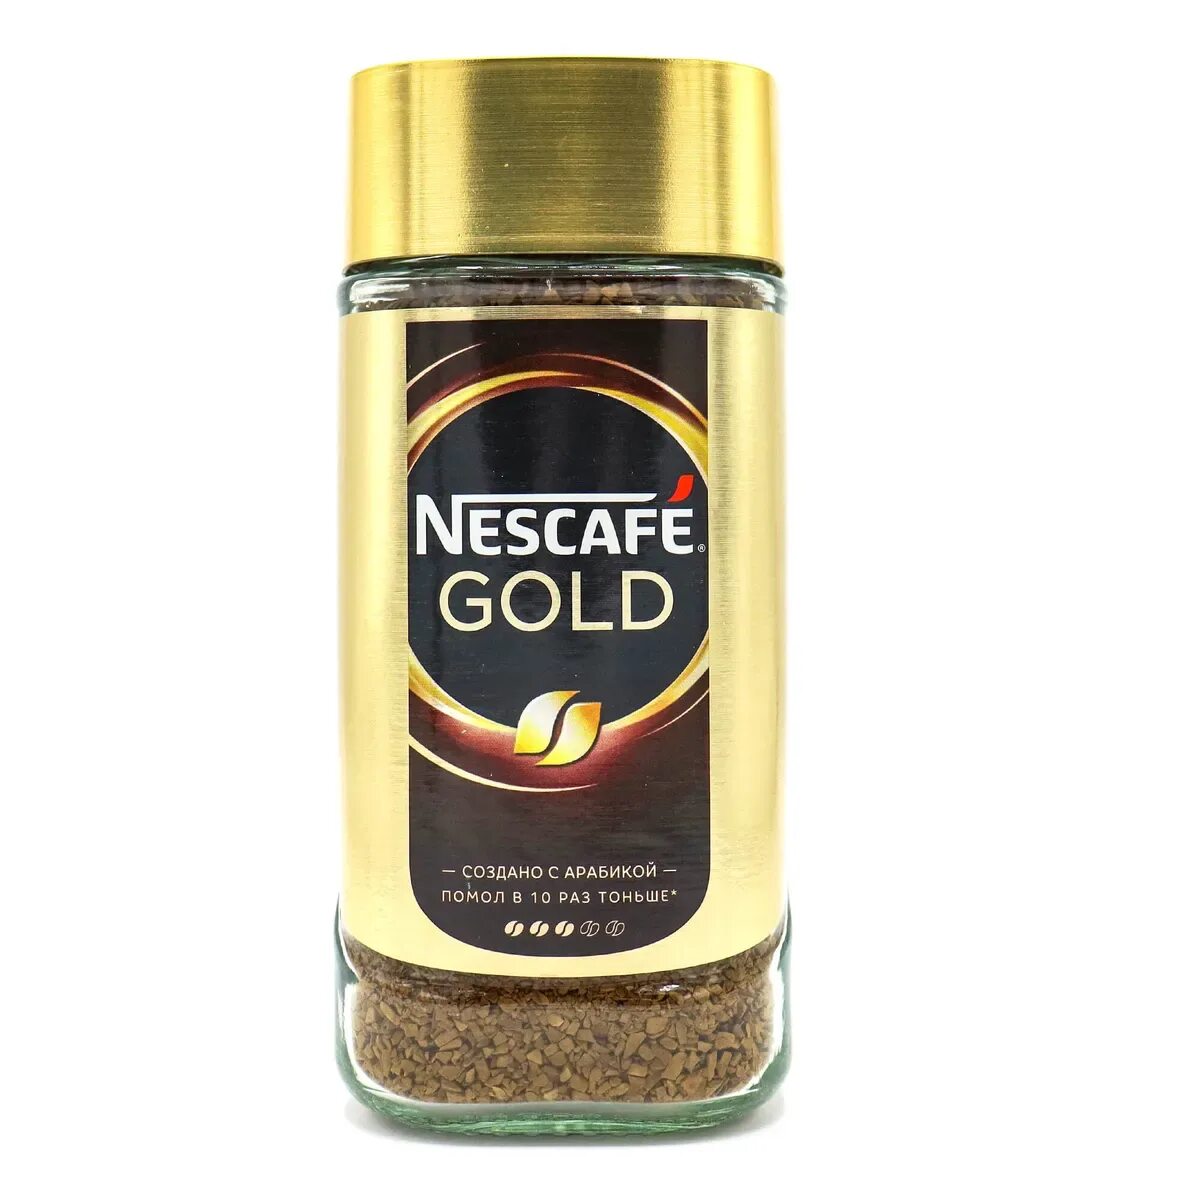 Кофе nescafe gold 190. Nescafe Gold 190г. Кофе Нескафе Голд 190г. Кофе растворимый Nescafe Gold, 190г. Нескафе Голд 190 стекло.